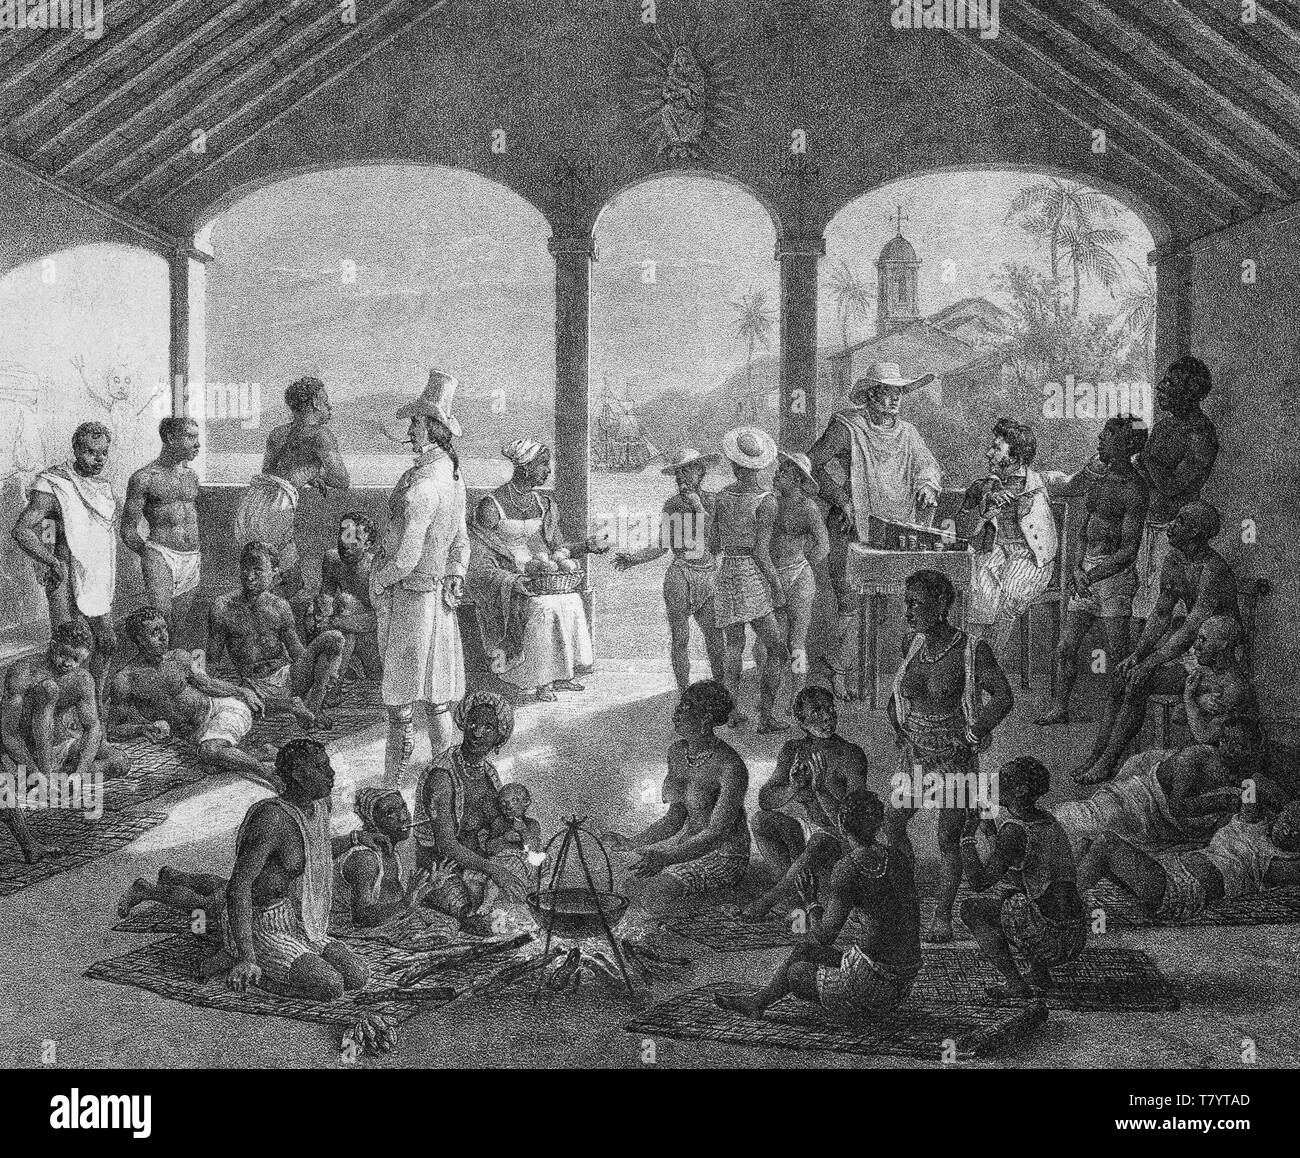 Rio de Janeiro, marché aux esclaves aux enchères, 1830 Banque D'Images